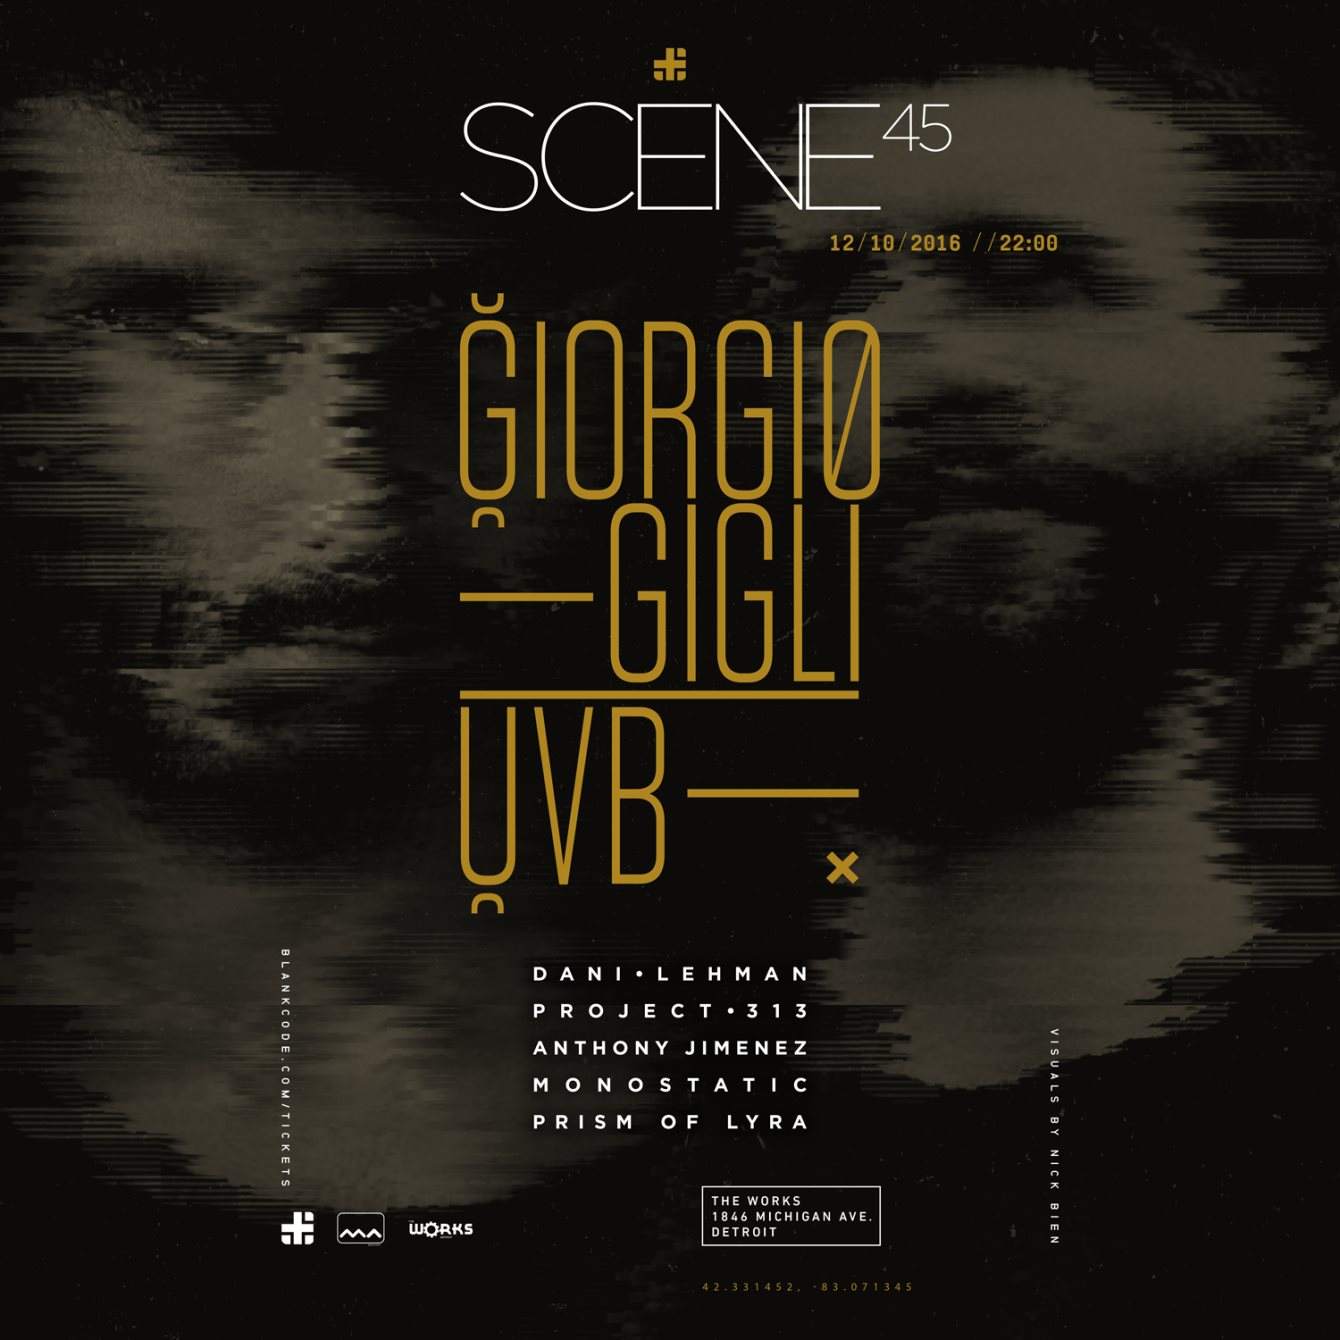 Scene 45 with Giorgio Gigli & UVB - Página frontal